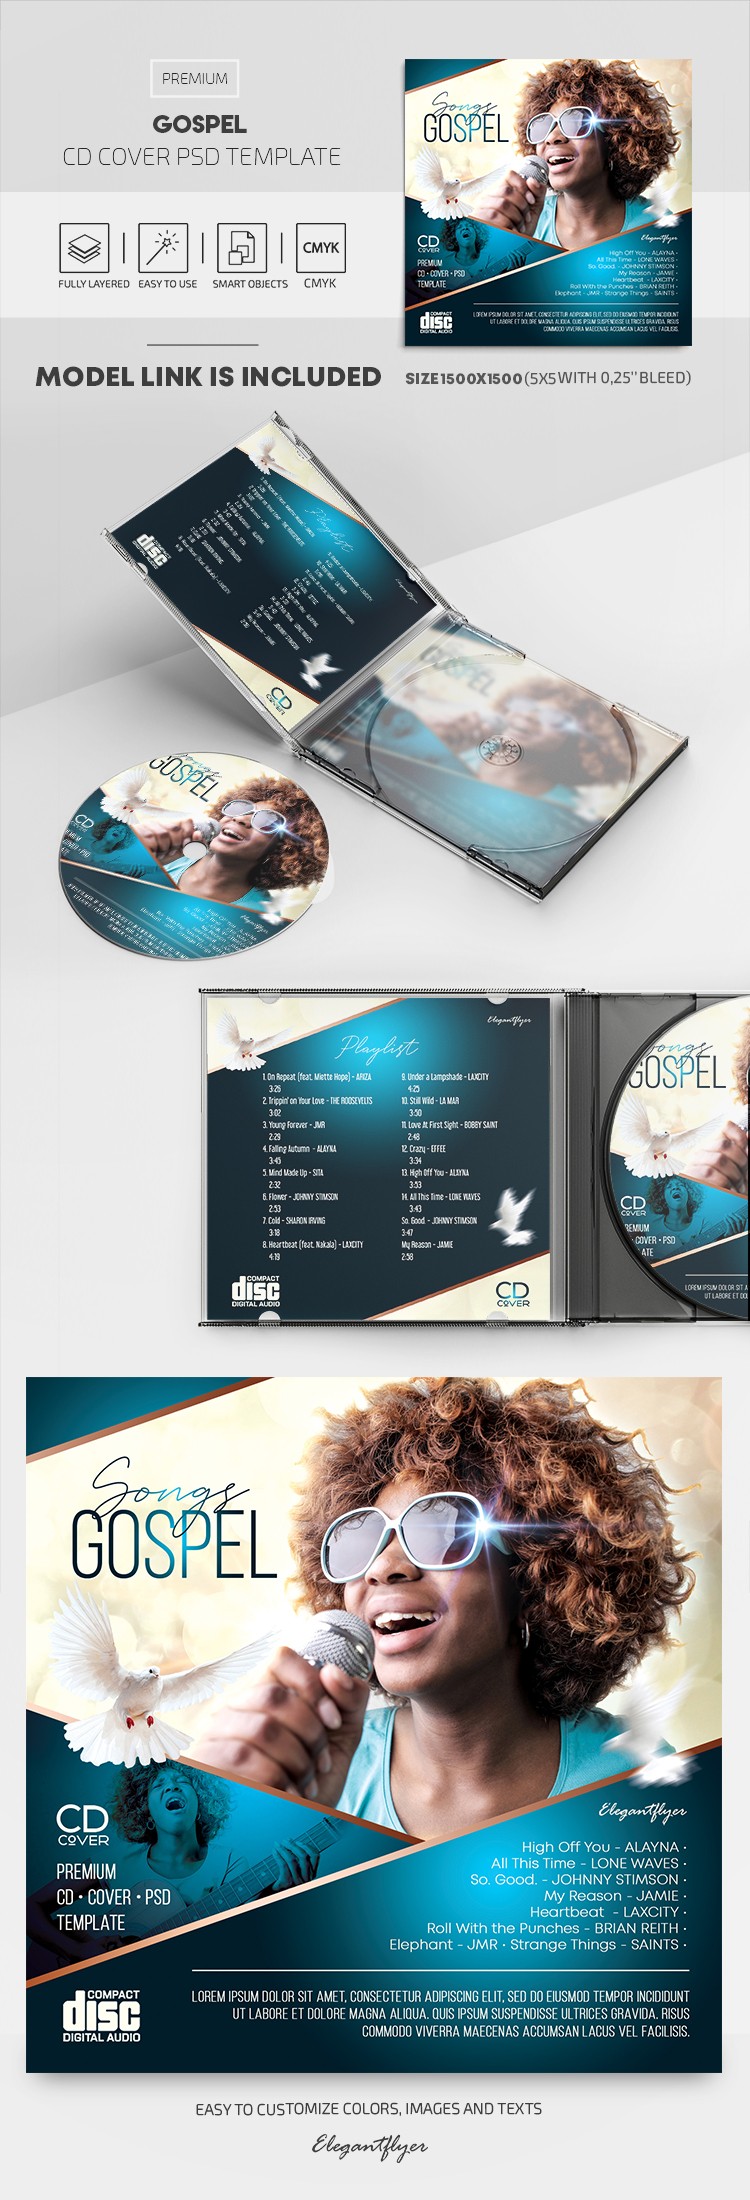 Copertina del CD del Vangelo by ElegantFlyer